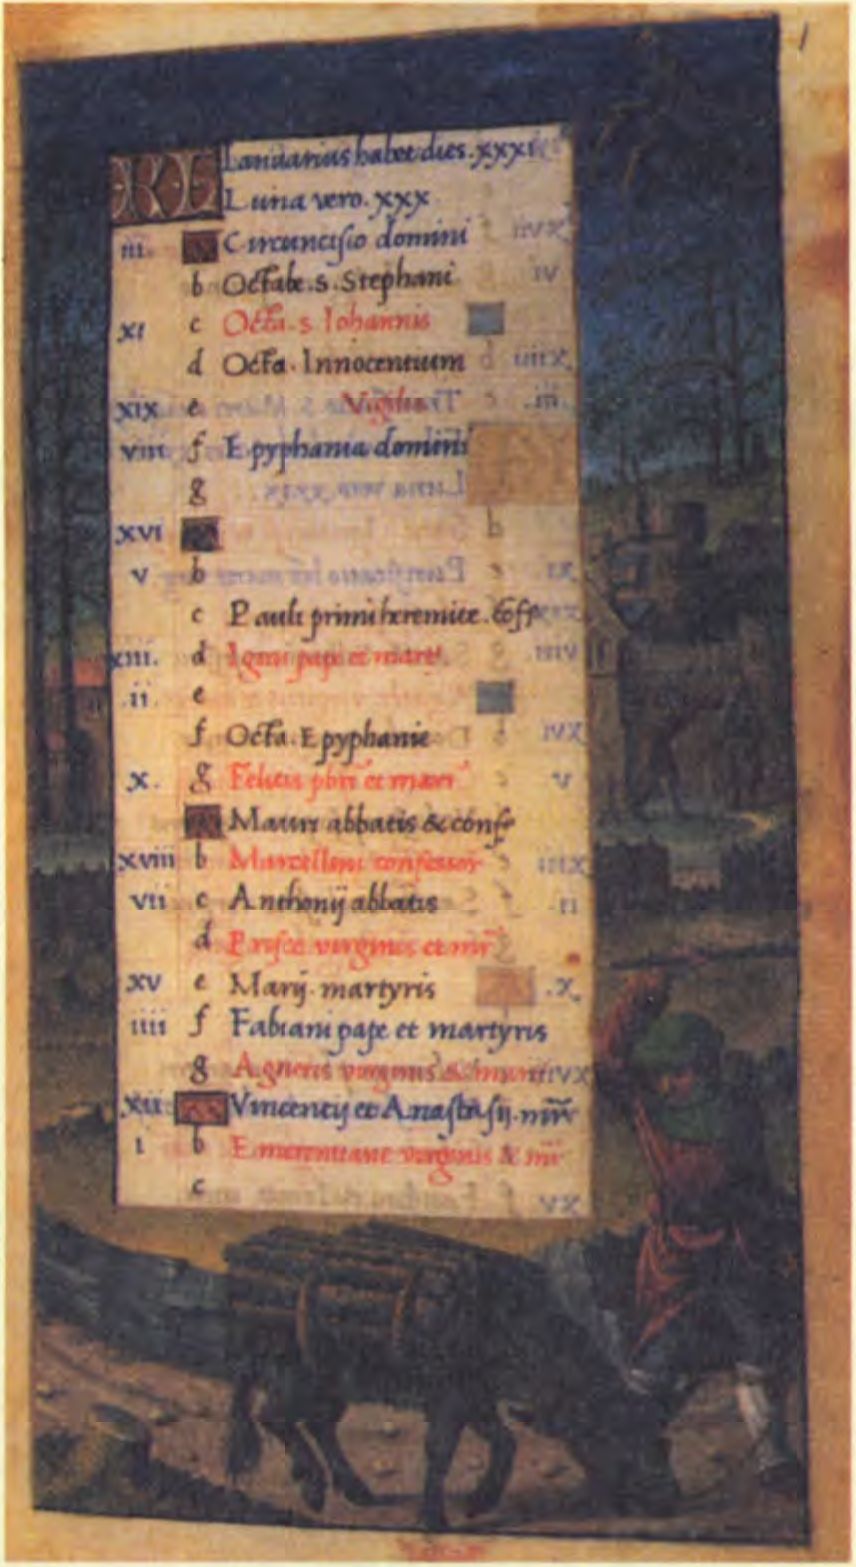 Знаки Зодиака часто изображались в средневековых календарях, но здесь они являются символами времени, не обладая совсем, или обладая поверхностным астрологическим значением. (Британская Библиотека)